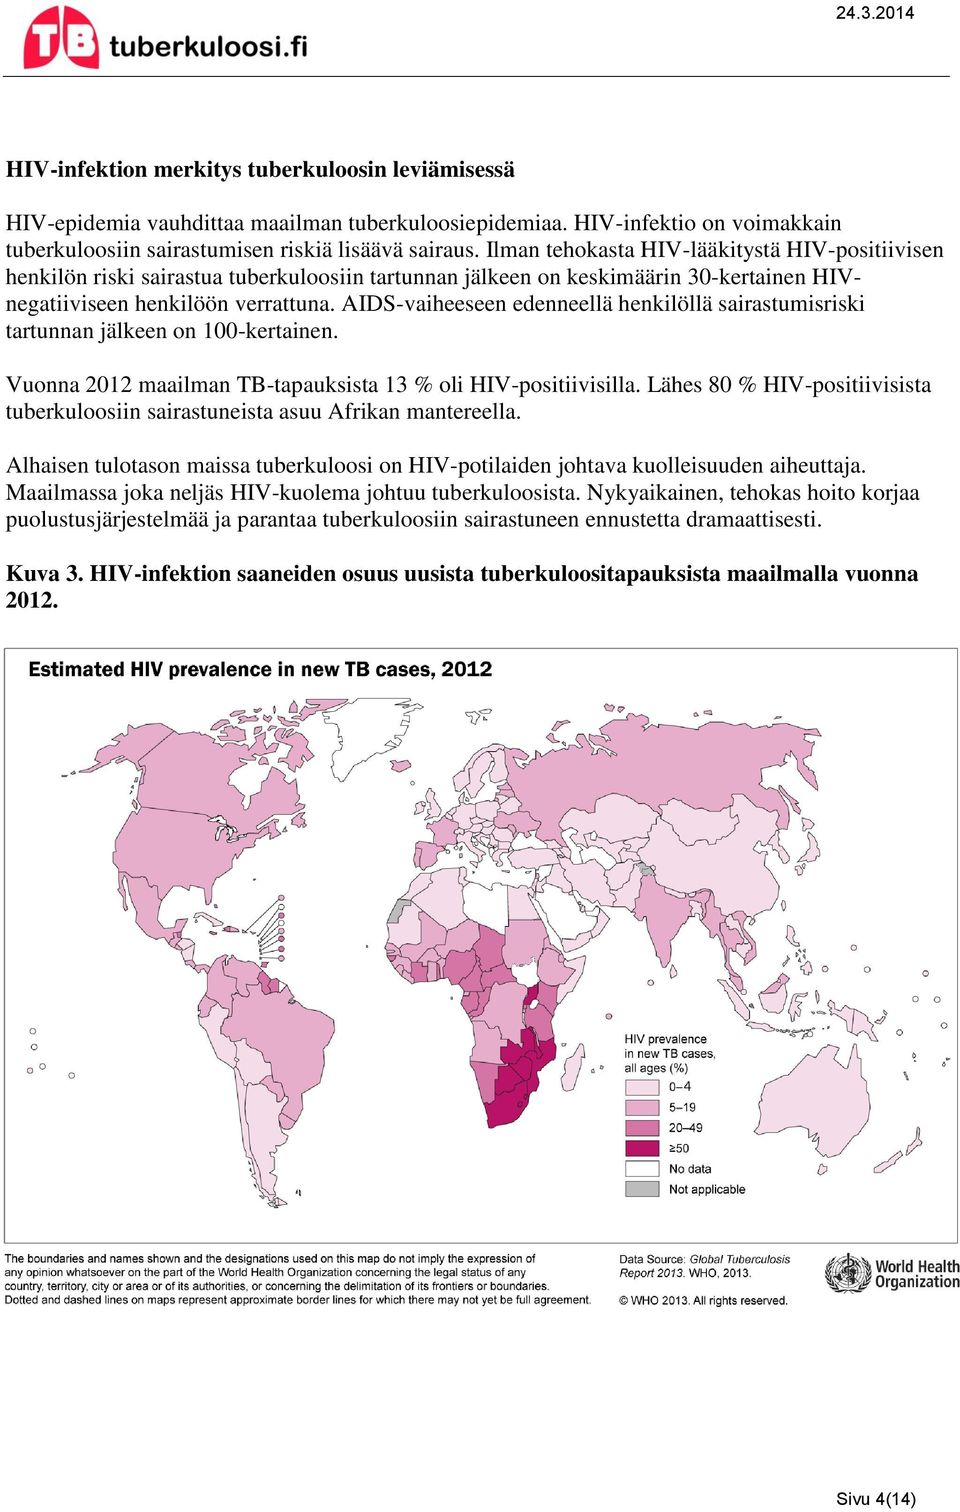 AIDS-vaiheeseen edenneellä henkilöllä sairastumisriski tartunnan jälkeen on 100-kertainen. Vuonna 2012 maailman TB-tapauksista 13 % oli HIV-positiivisilla.